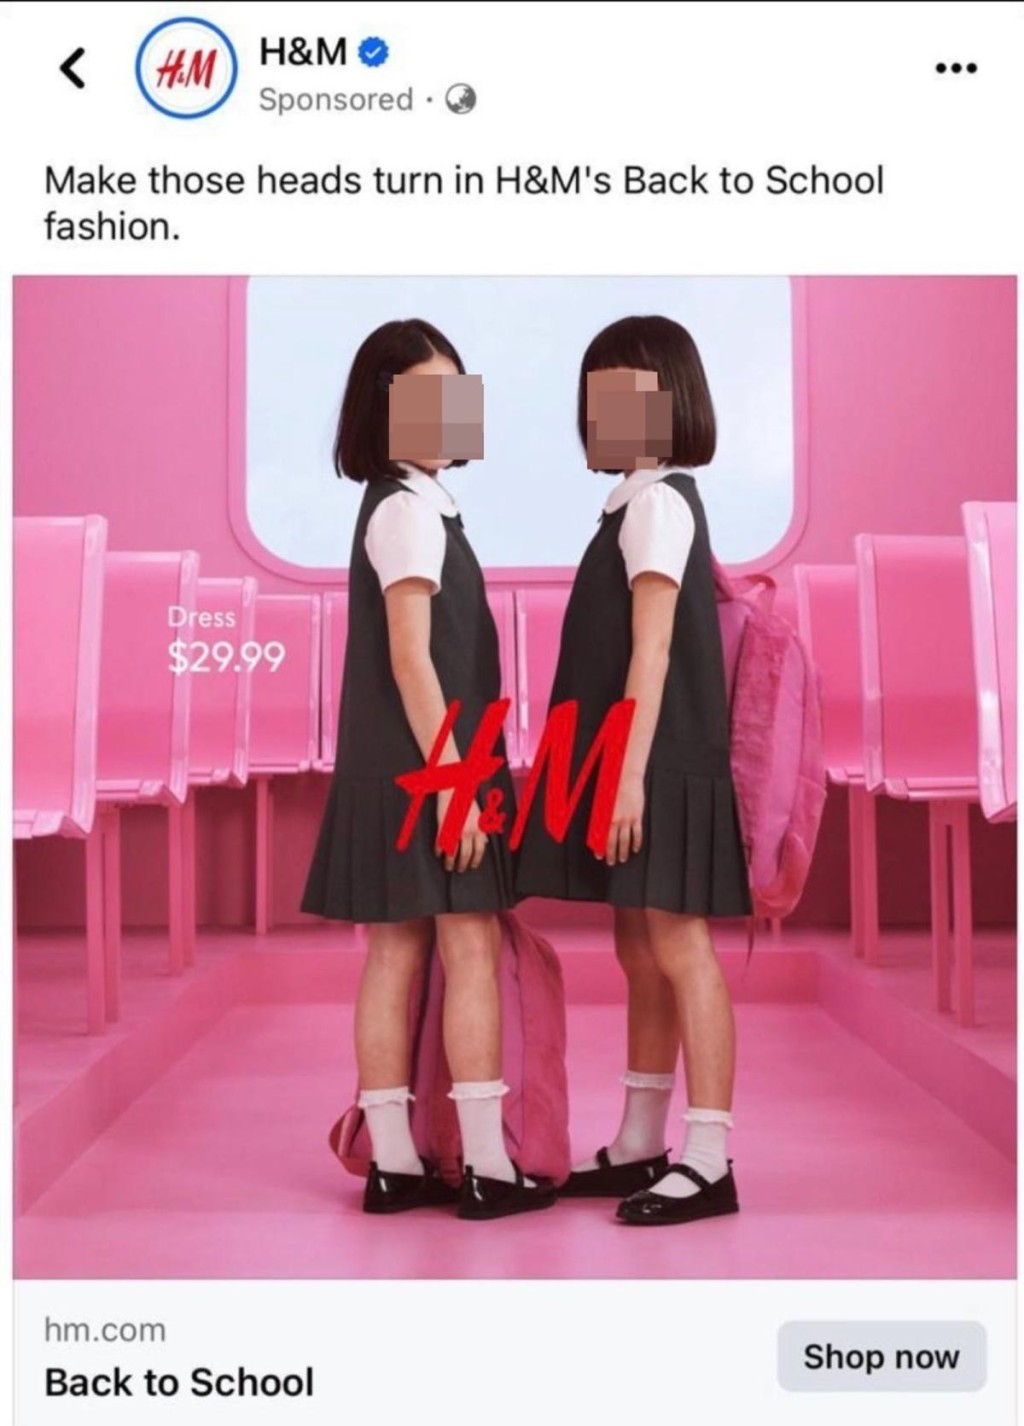 广告视觉焦点是2名小女生，她们都穿著短袖白色短袖衬衫、外罩无袖黑色连身学生裙，裙长为膝上高度，并搭配白袜和黑色漆皮鞋。网上图片